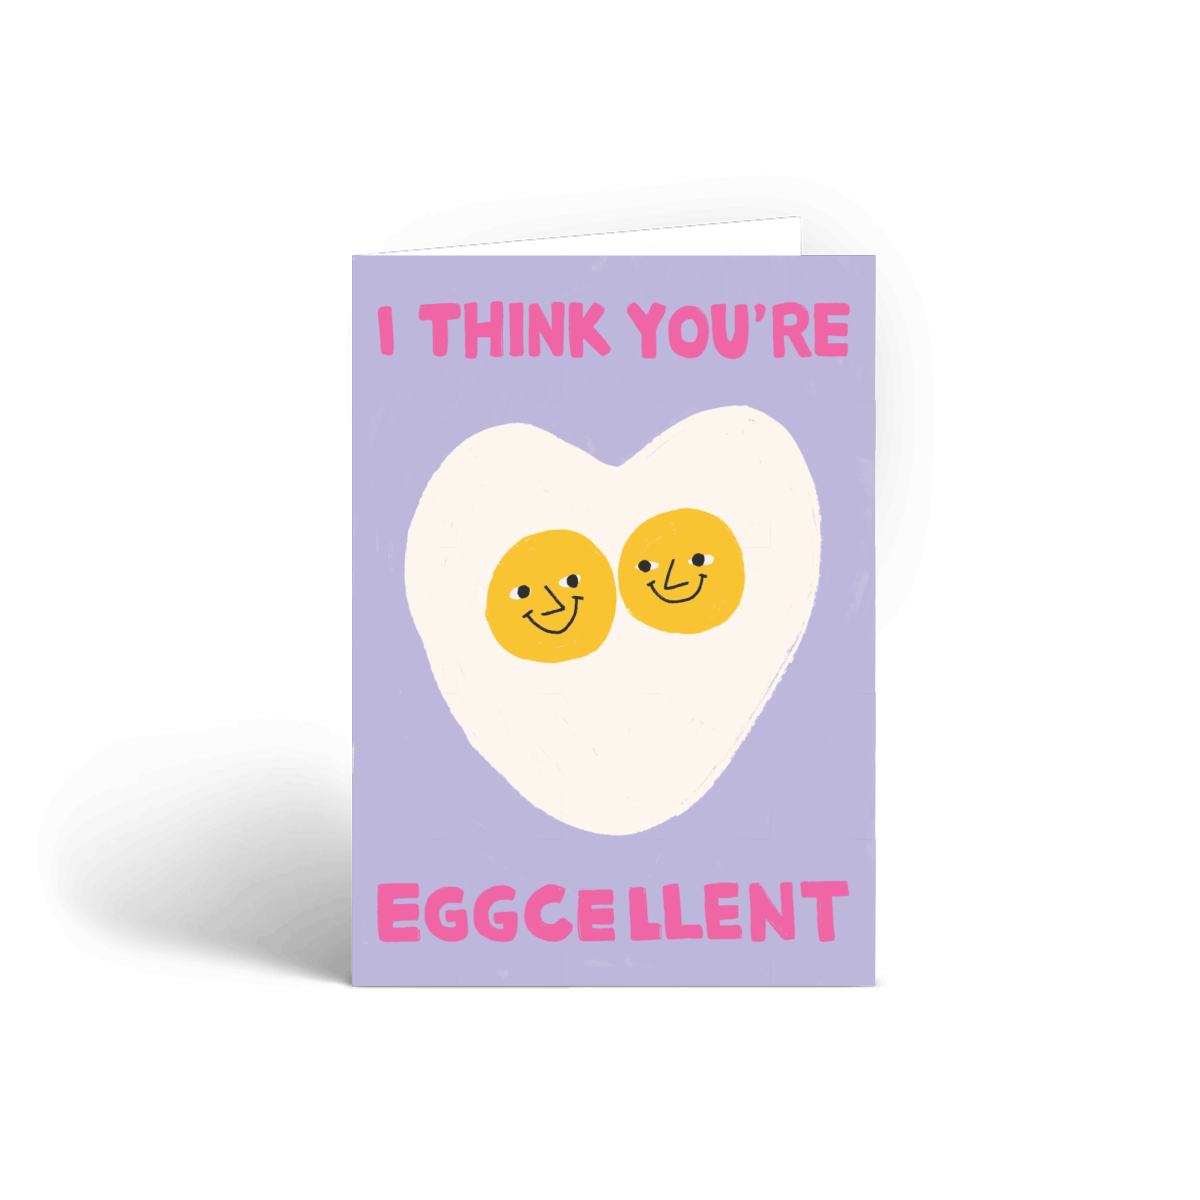 You're Eggcellent